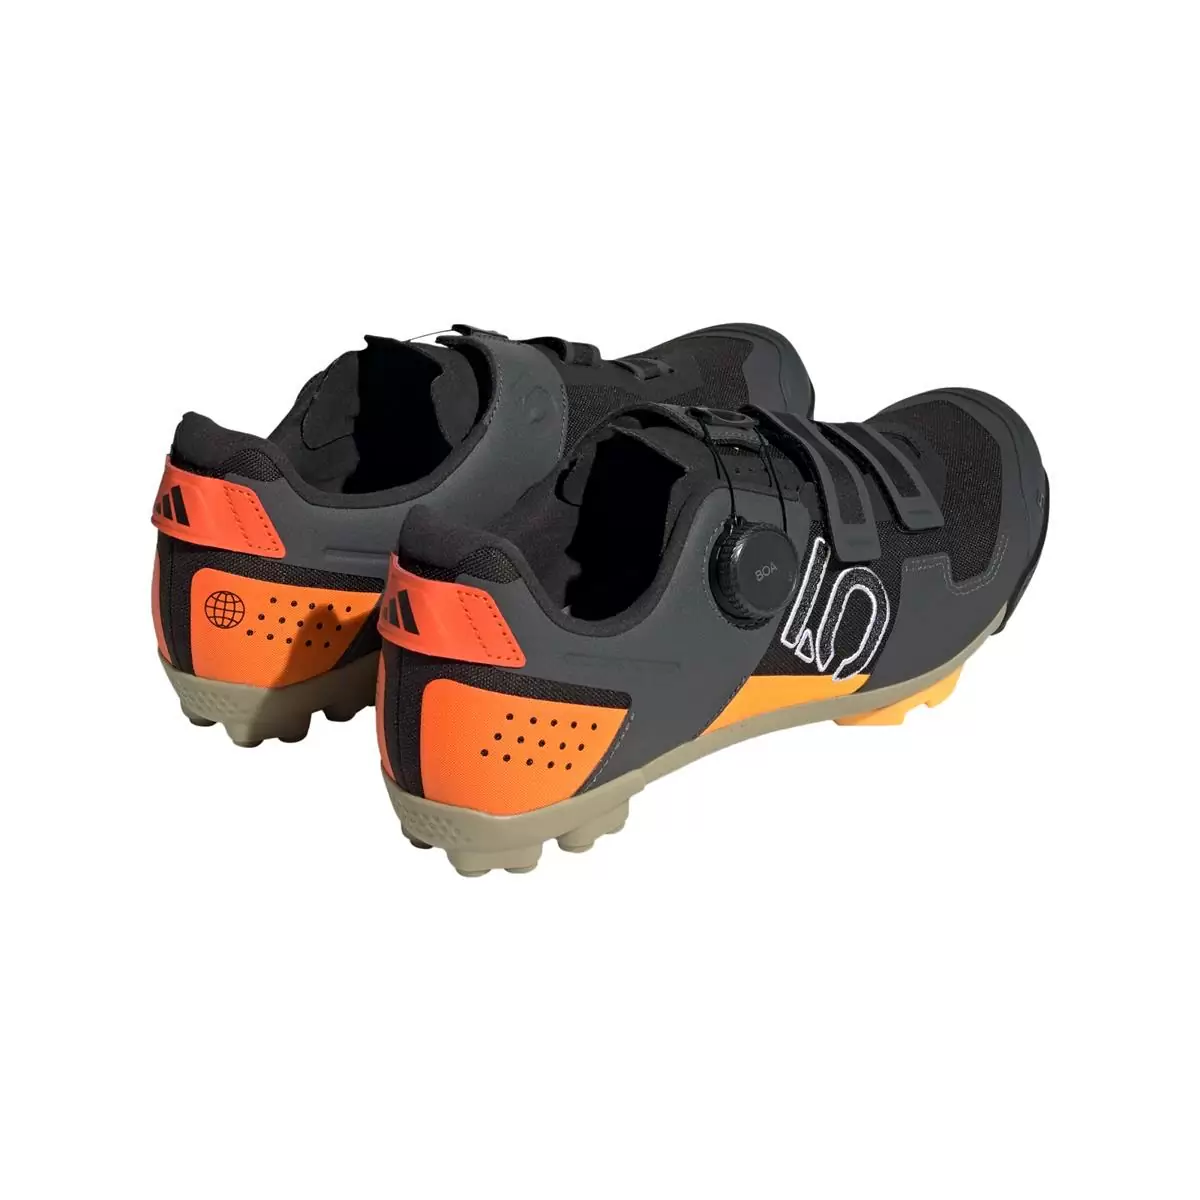 Clip 5.10 Kestrel Boa MTB Shoes Black/Orange Size 41.5 #4